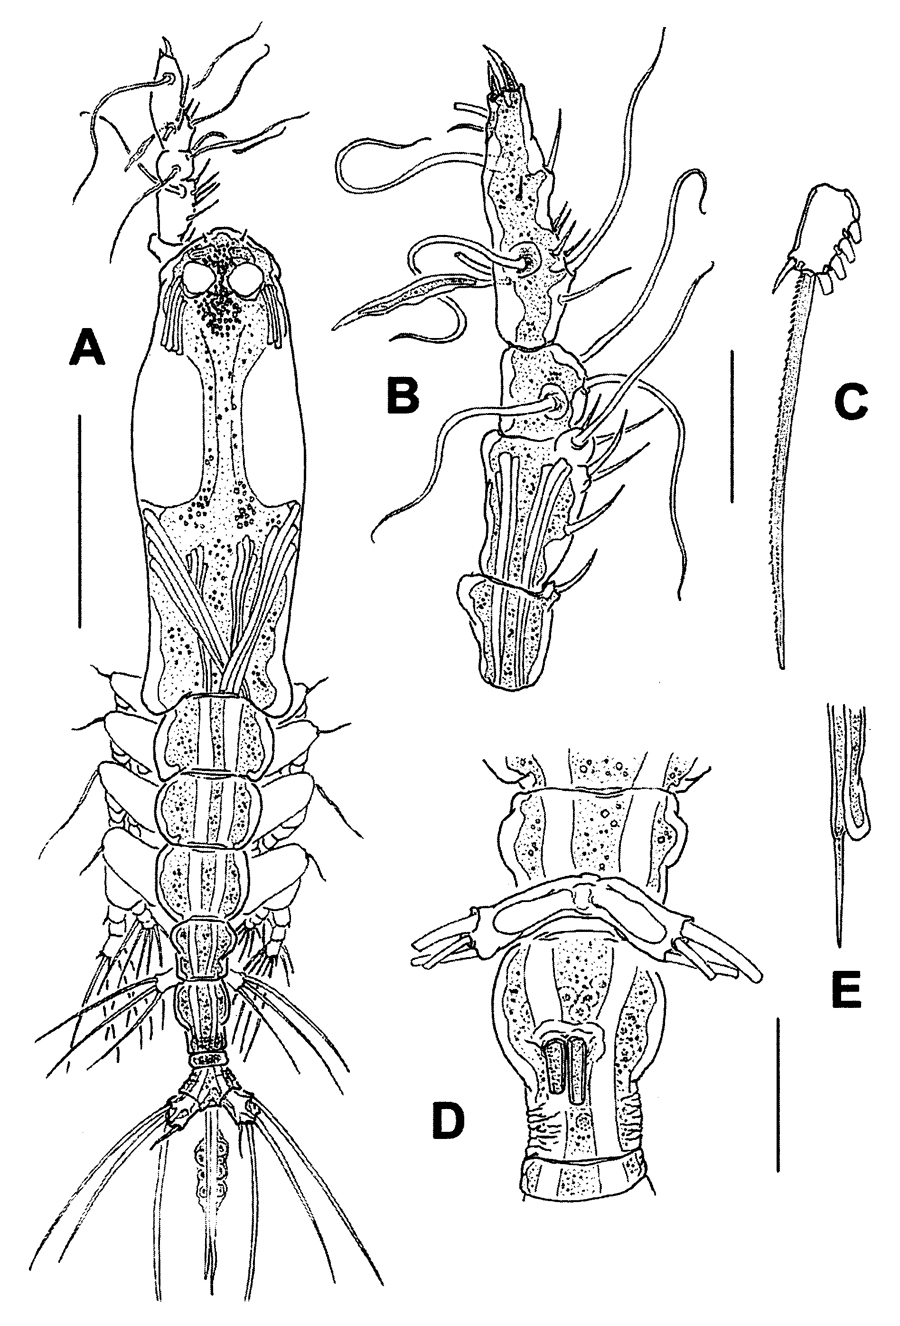 Species Monstrillopsis igniterra - Plate 1 of morphological figures